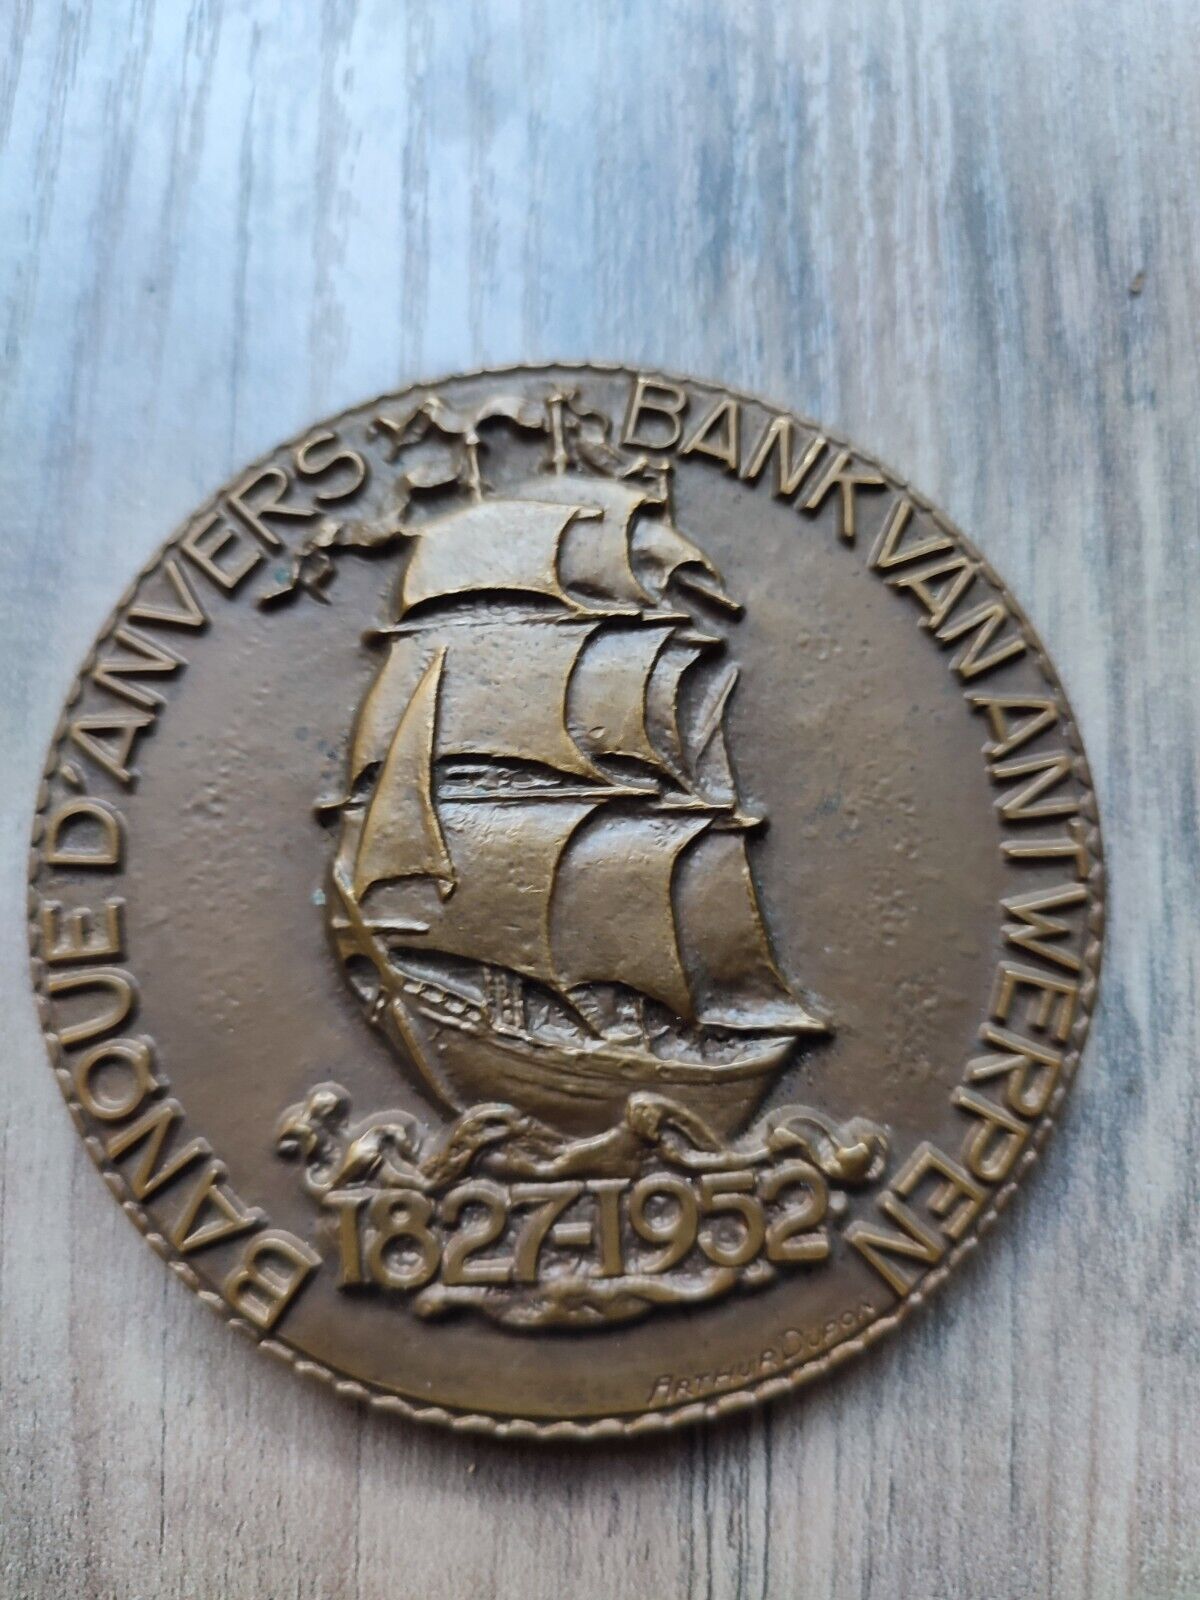 Antwerp Bank Antwerp Medal